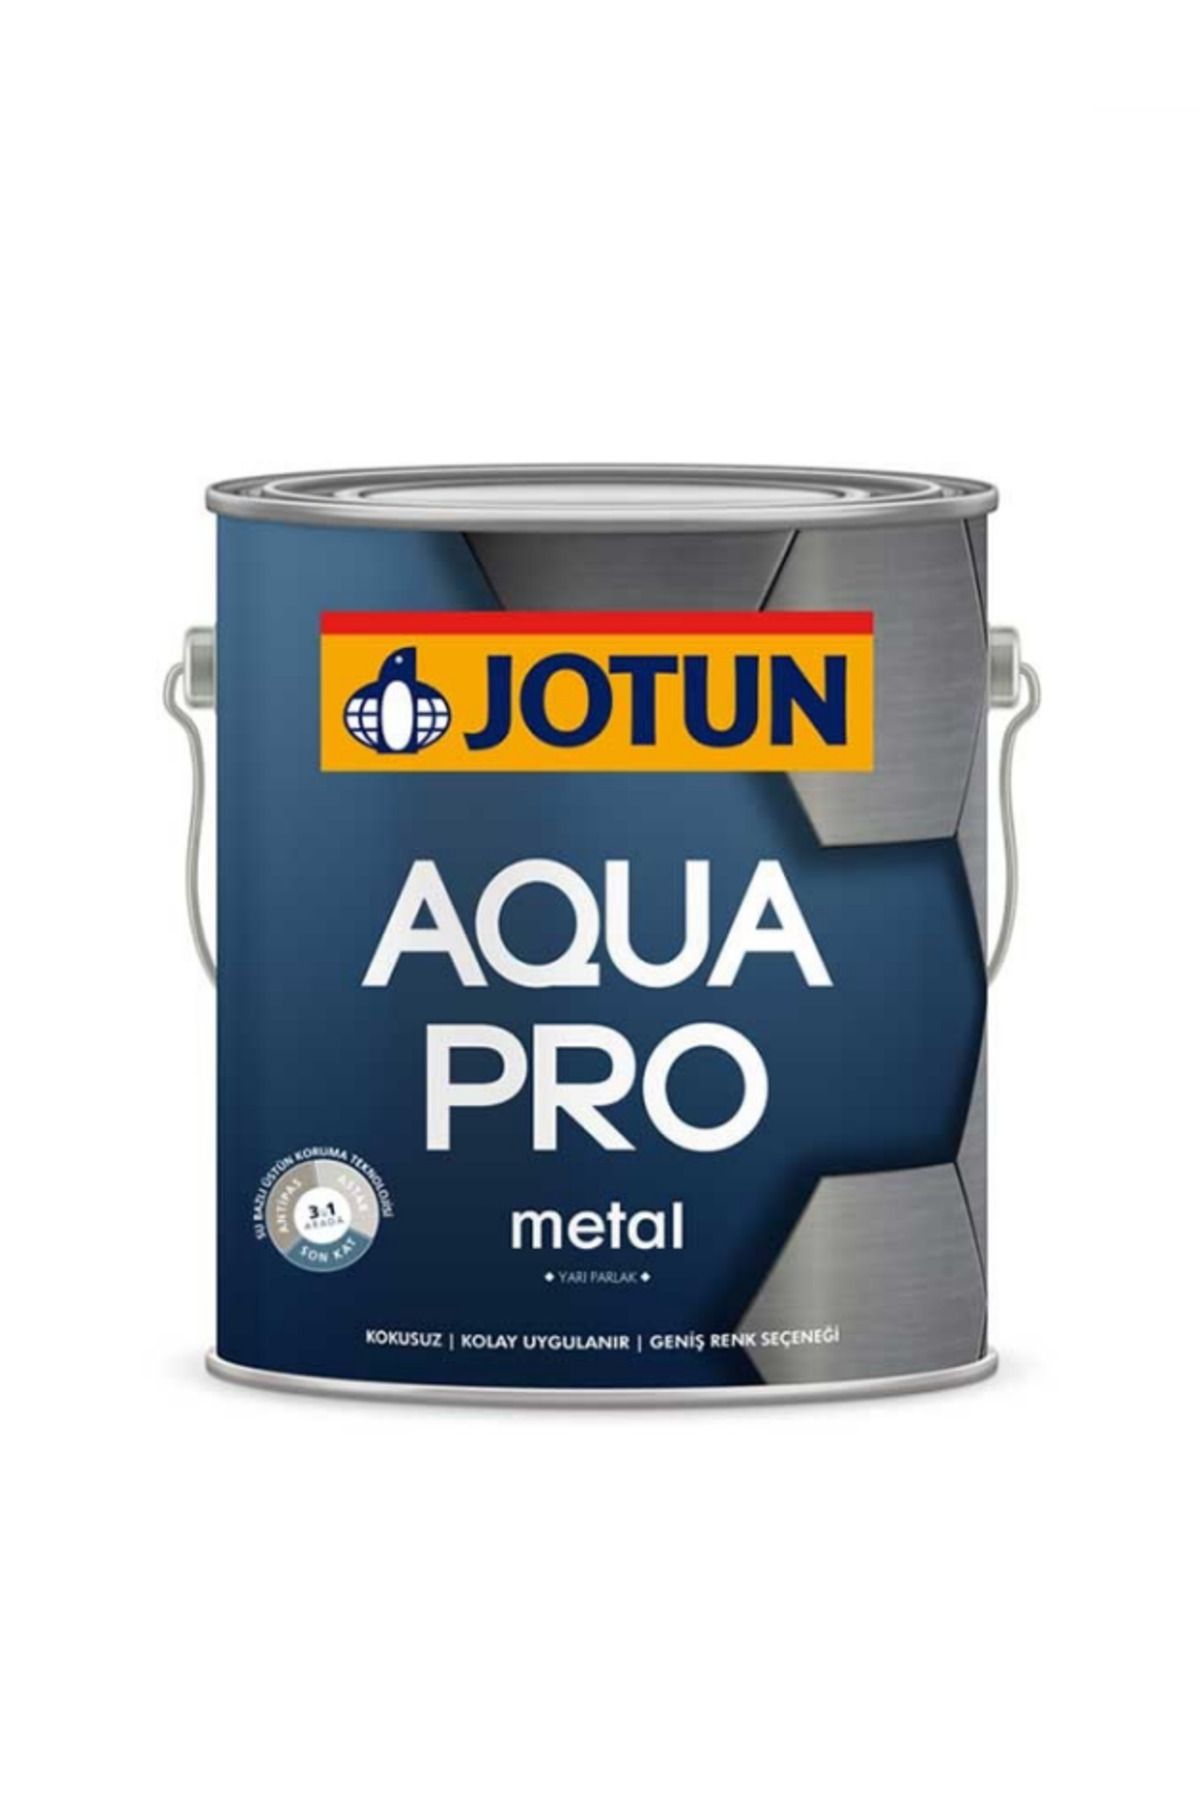 Jotun Aqua Pro RAL 6017 Maigrün Metal Boyası 2,25 LT